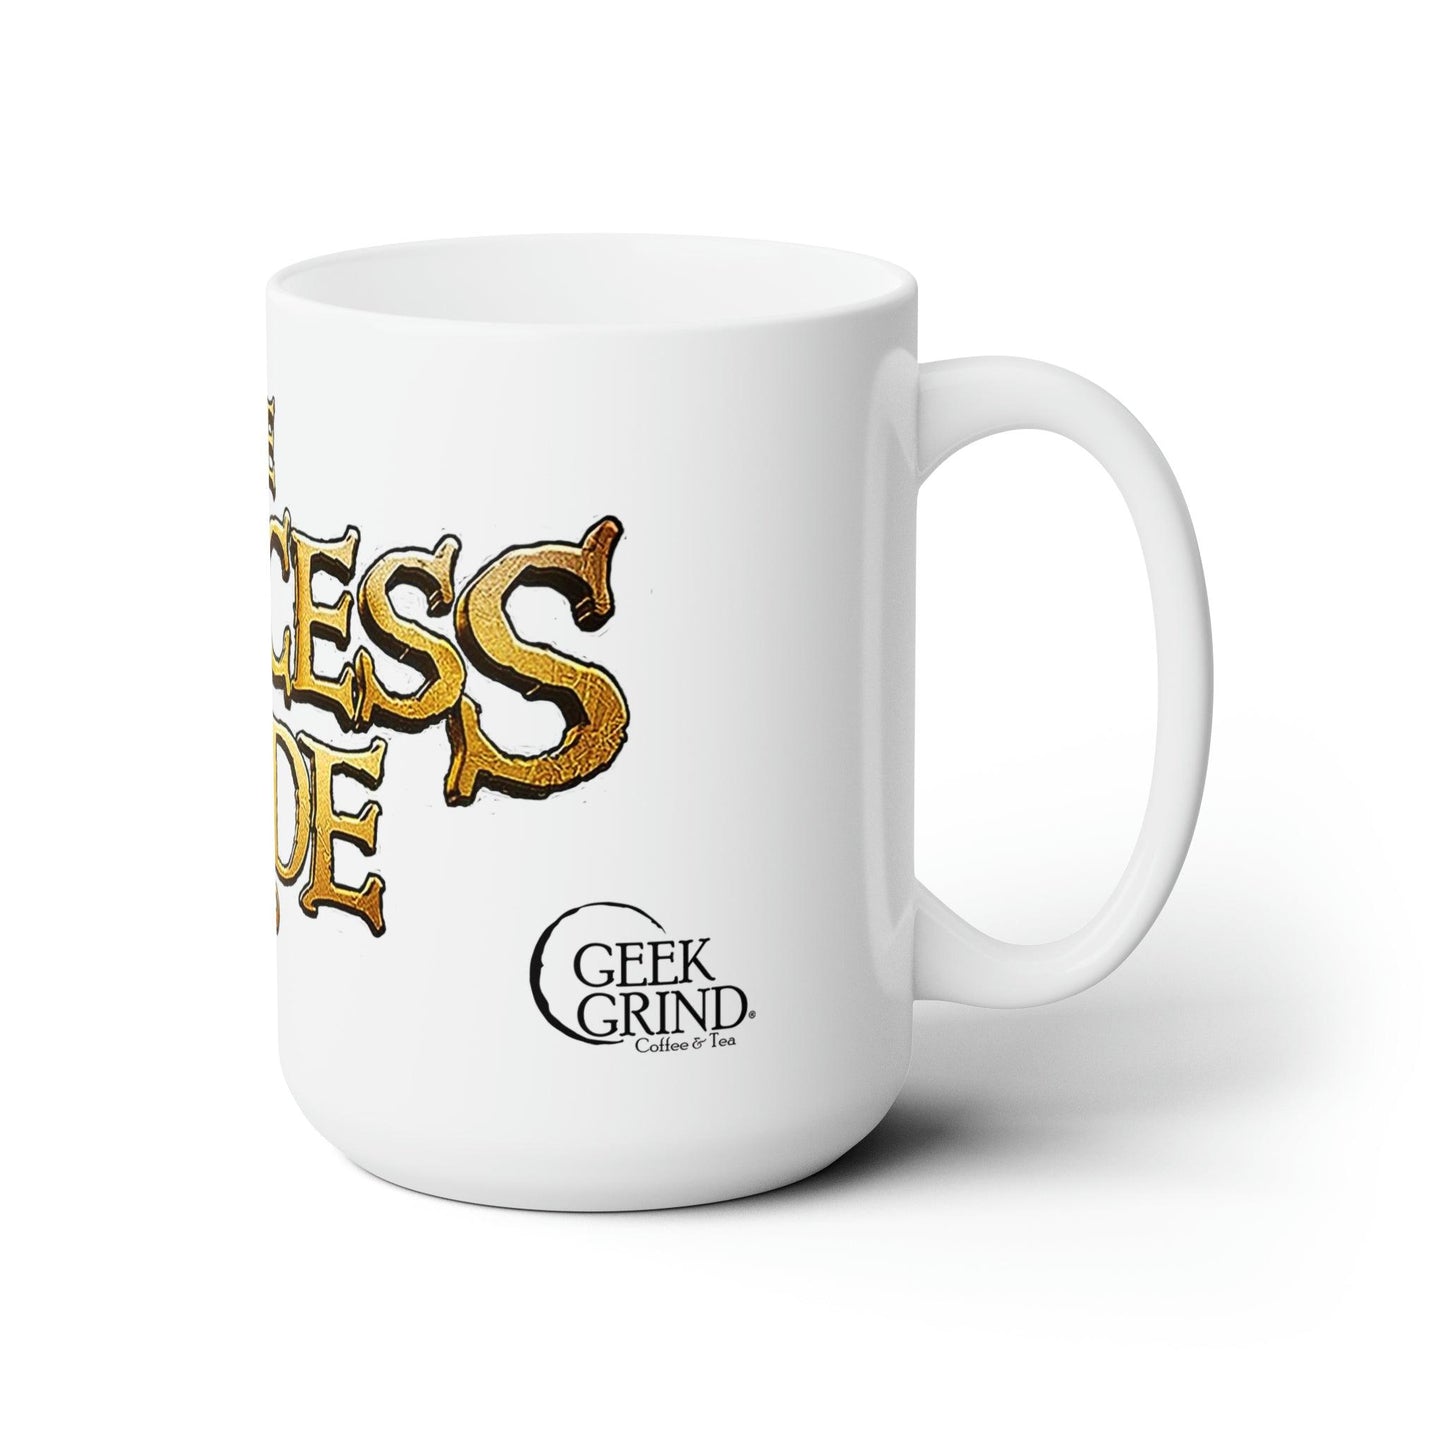 The Princess Bride Mug - Geek Grind Coffee